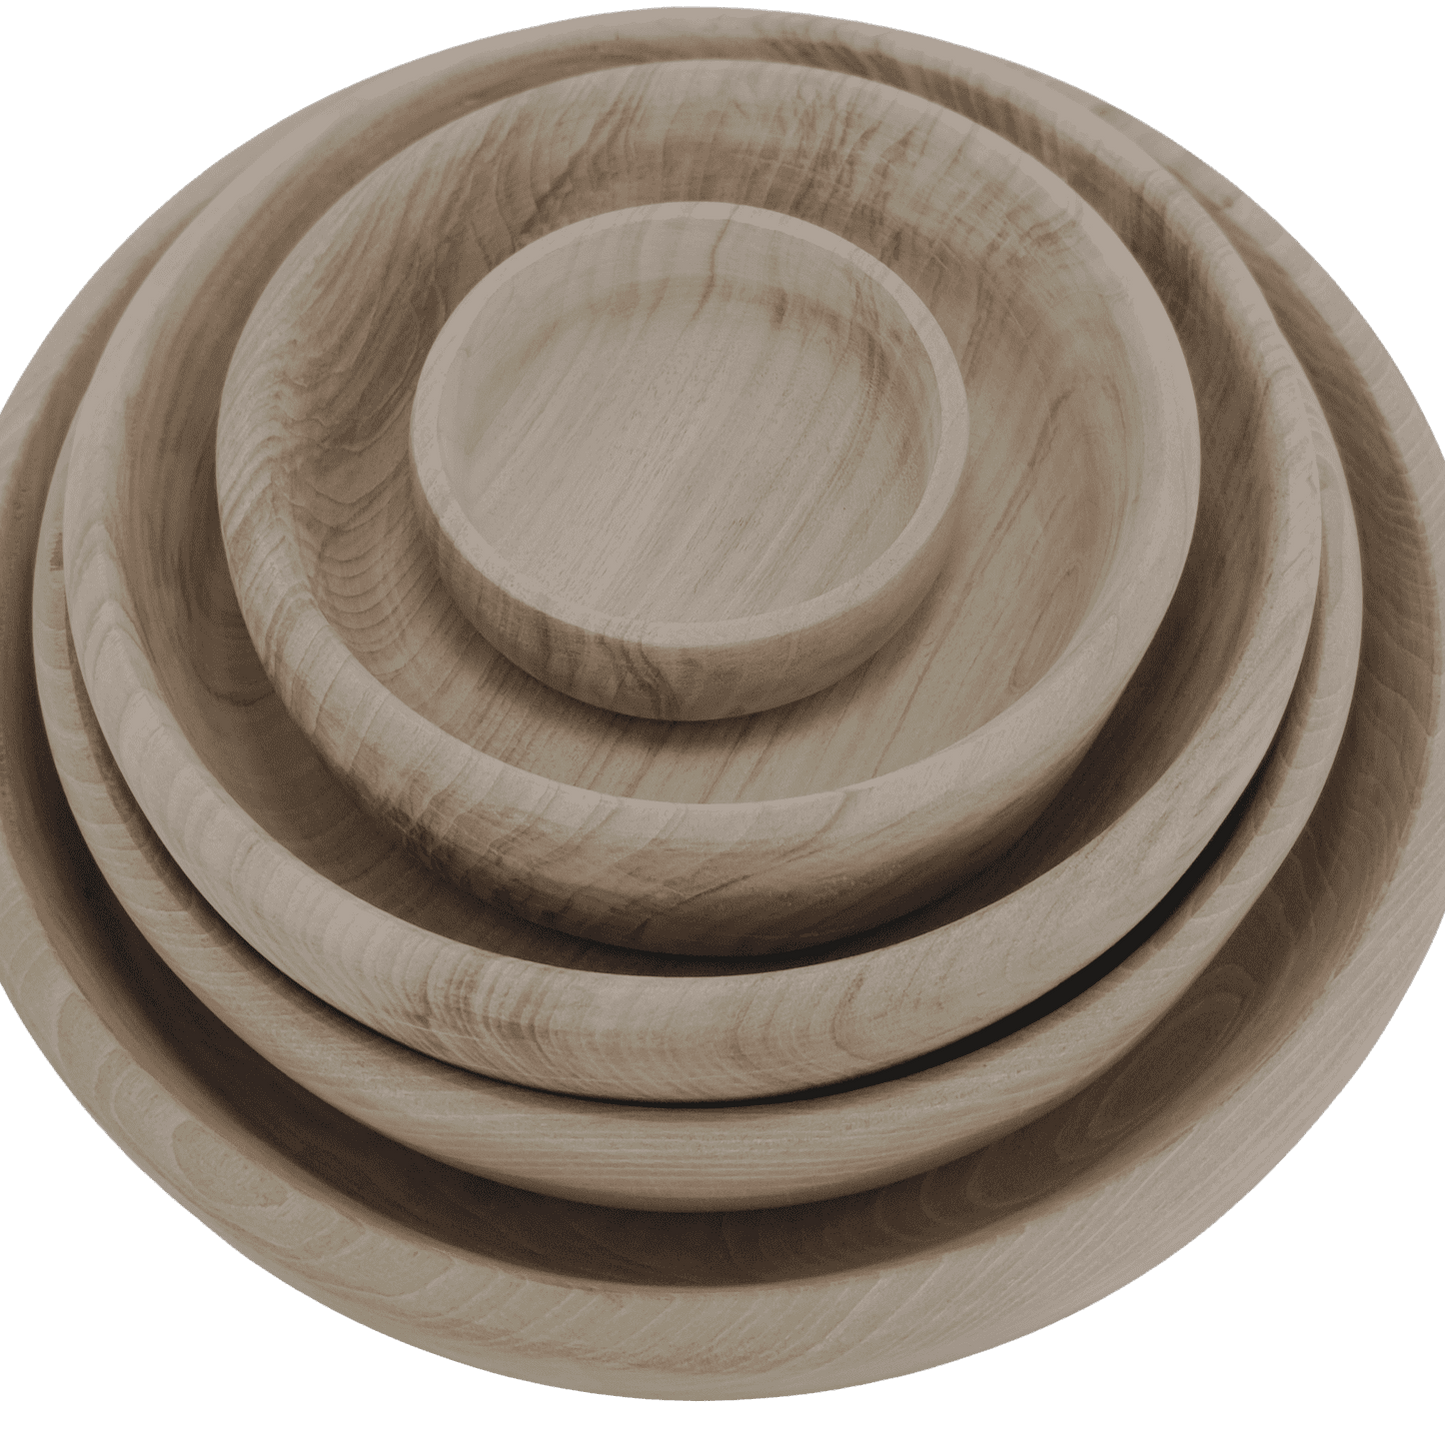 Bowl in walnut wood - 30 cm